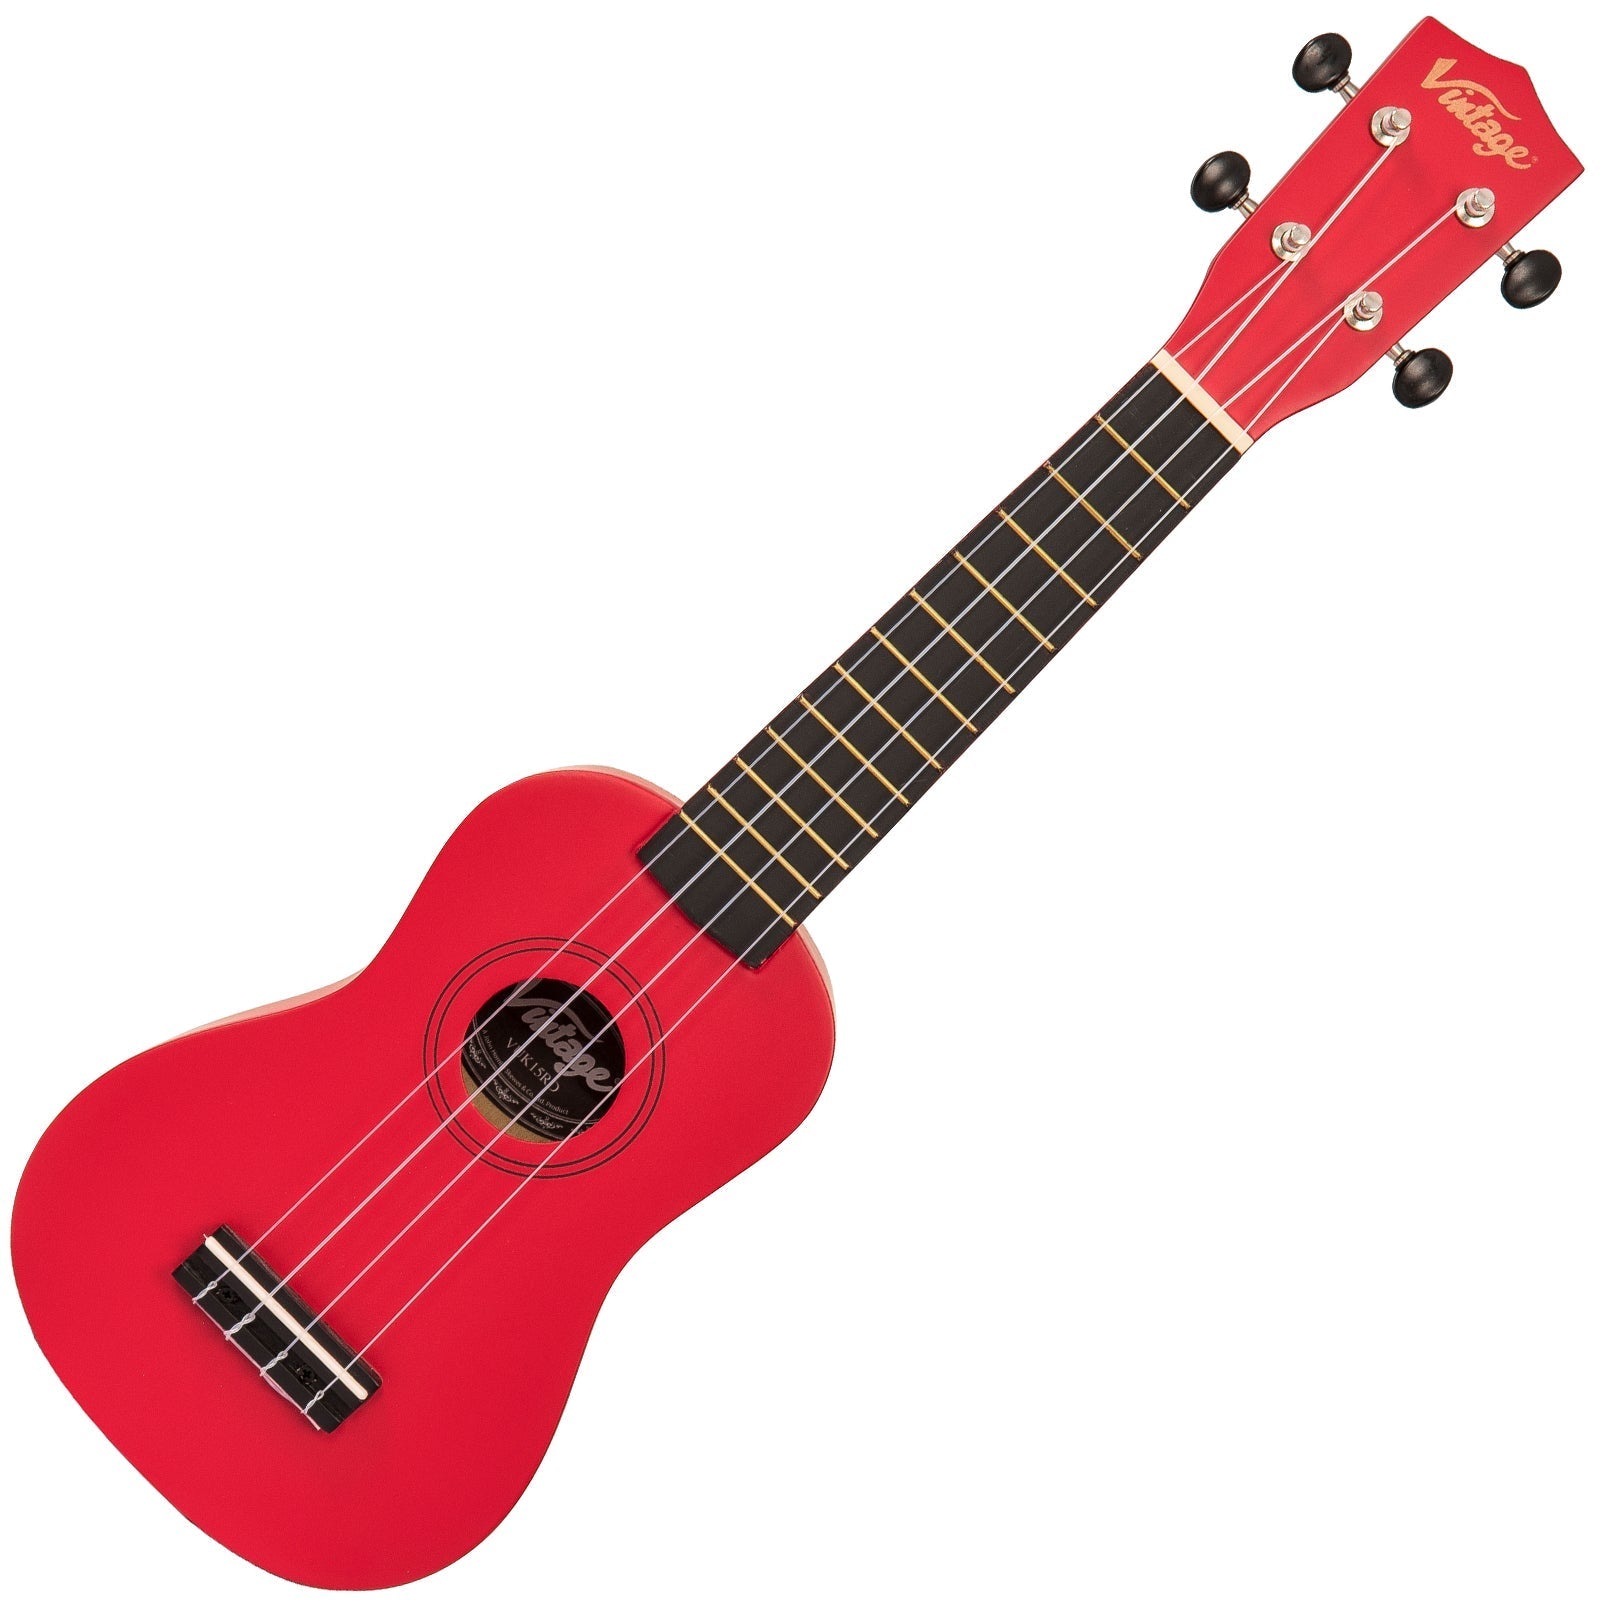 Vintage Soprano Ukulele ~ Satin Red, Ukuleles for sale at Richards Guitars.